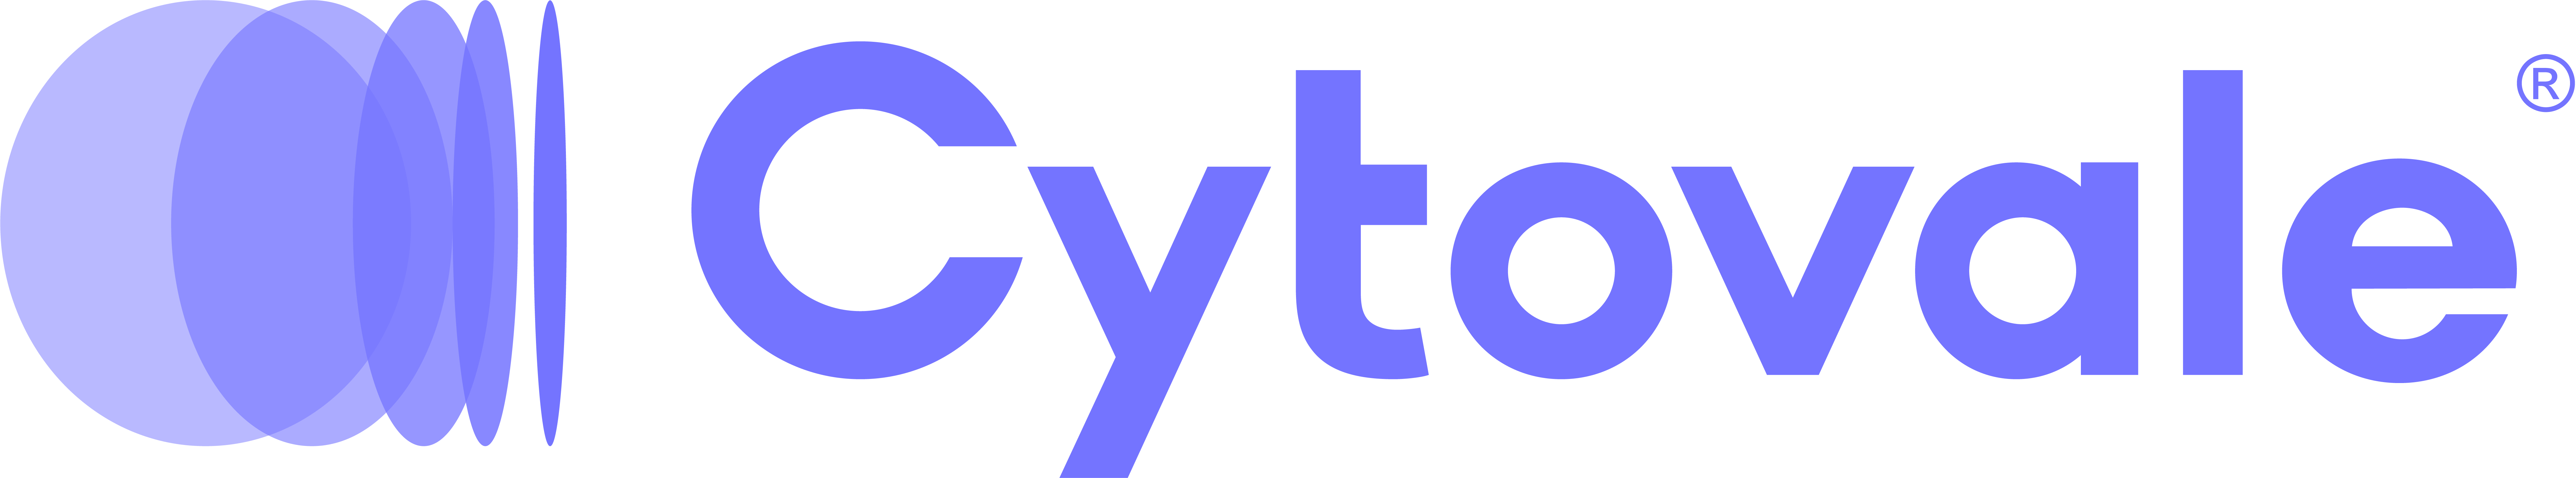 Cytovale (External) logo